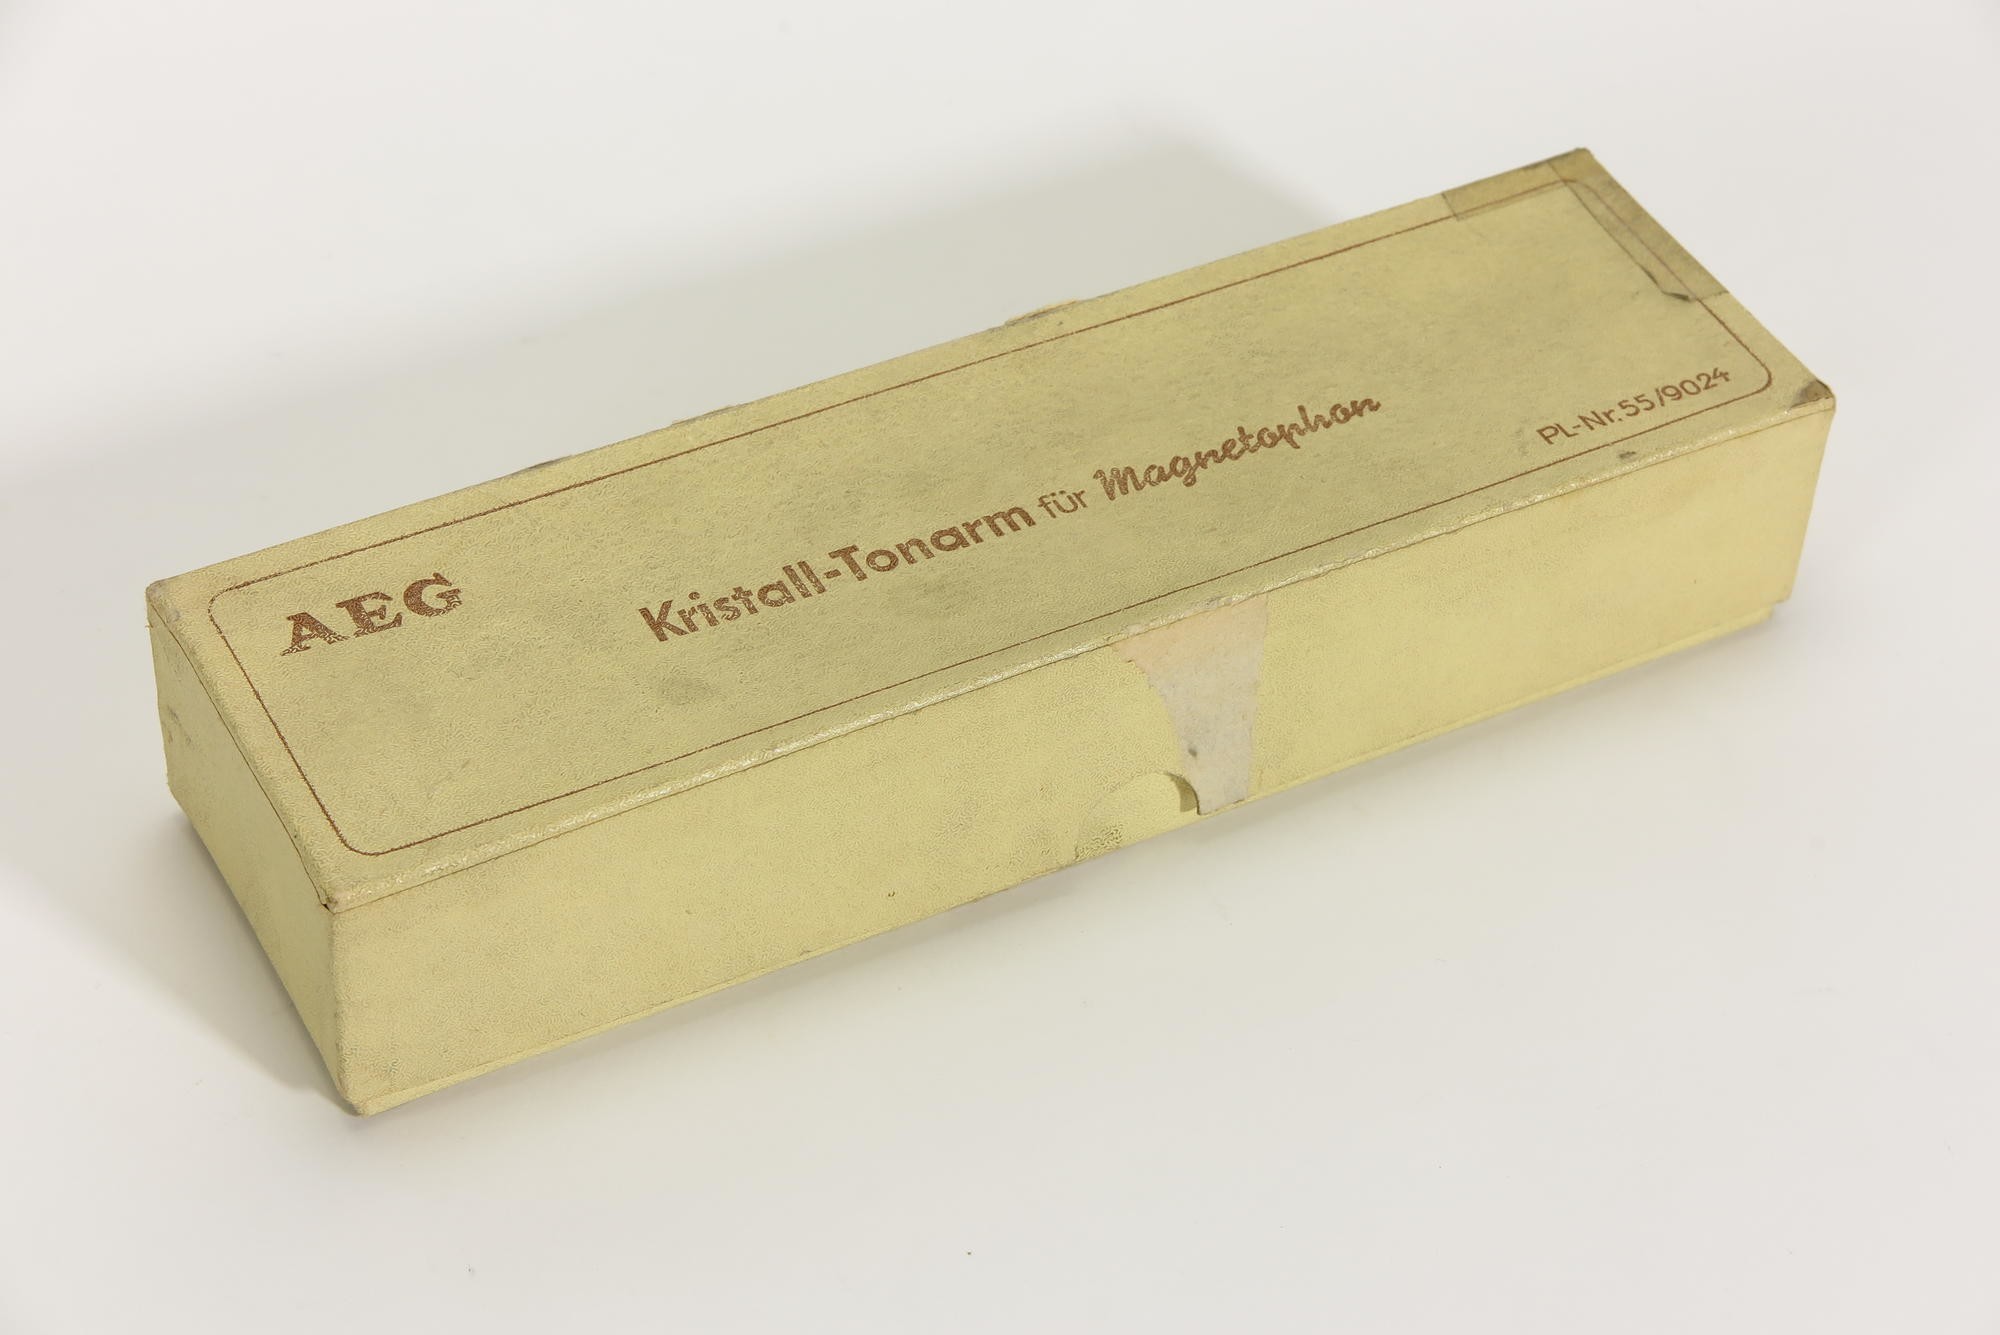 Verpackungskarton für Kristall-Tonarm von Plattenspieler-Zusatz für AEG Magnetophon KL15 und KL15D (Stiftung Deutsches Technikmuseum Berlin CC0)